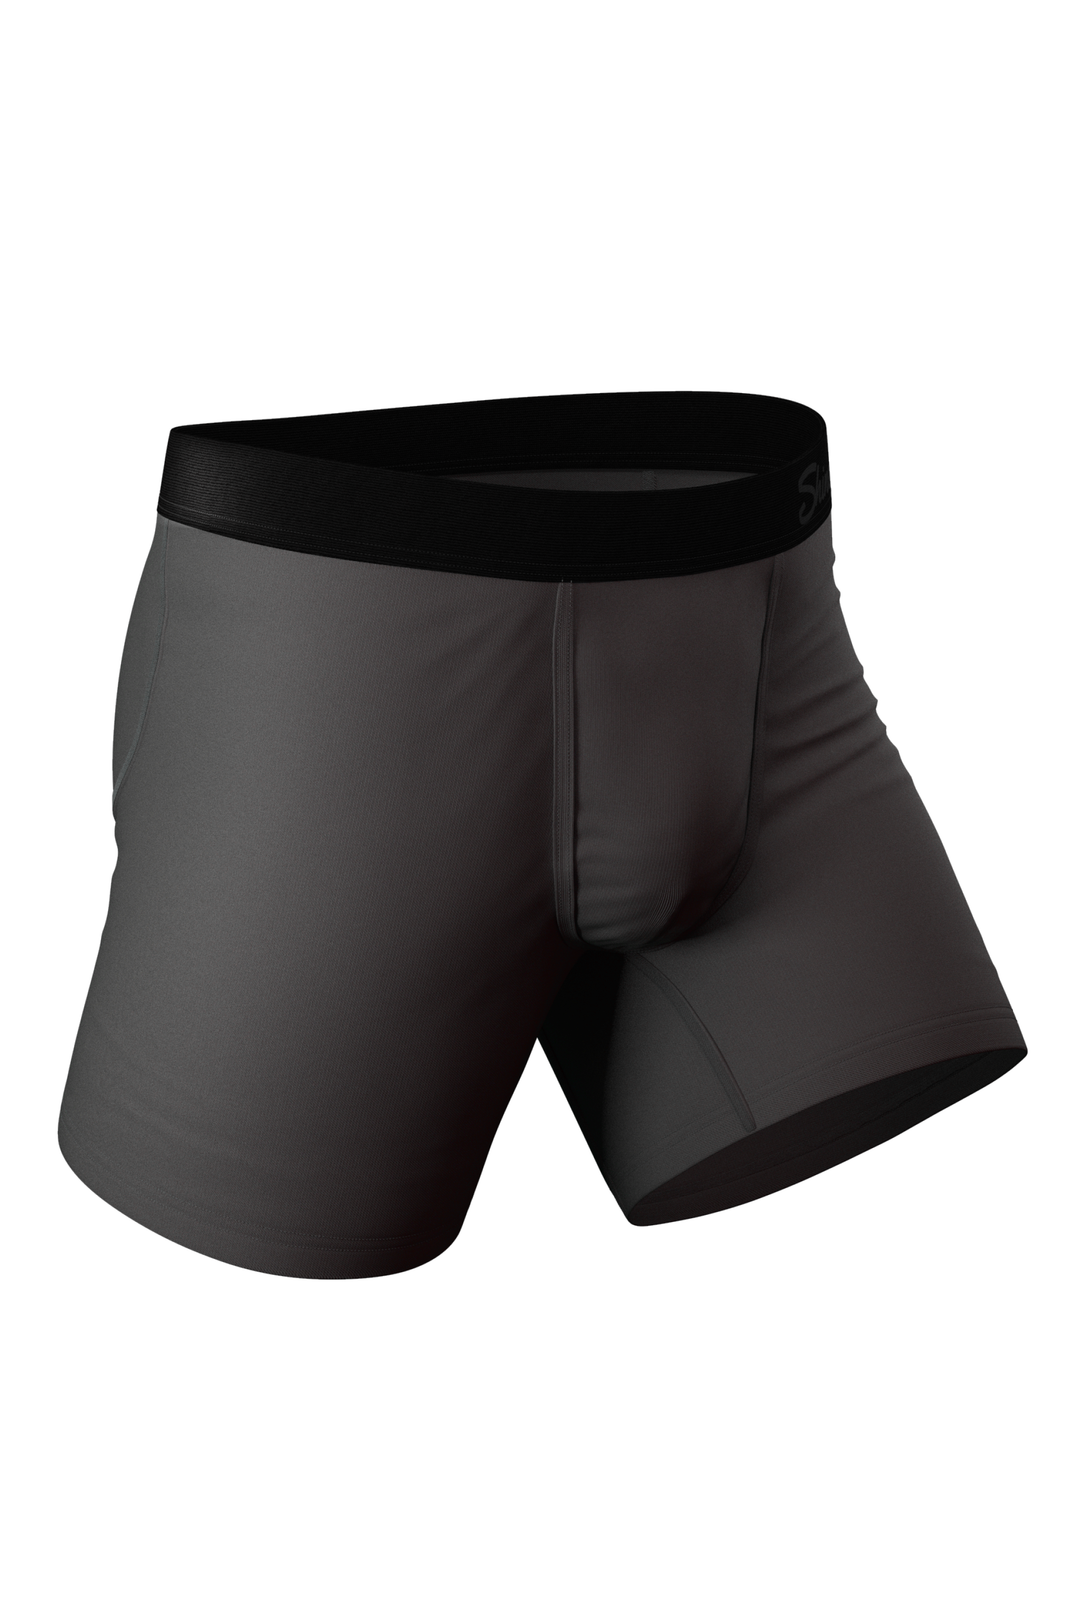 Dark Grey Ball Hammock® Pouch Underwear | The Coal Miner